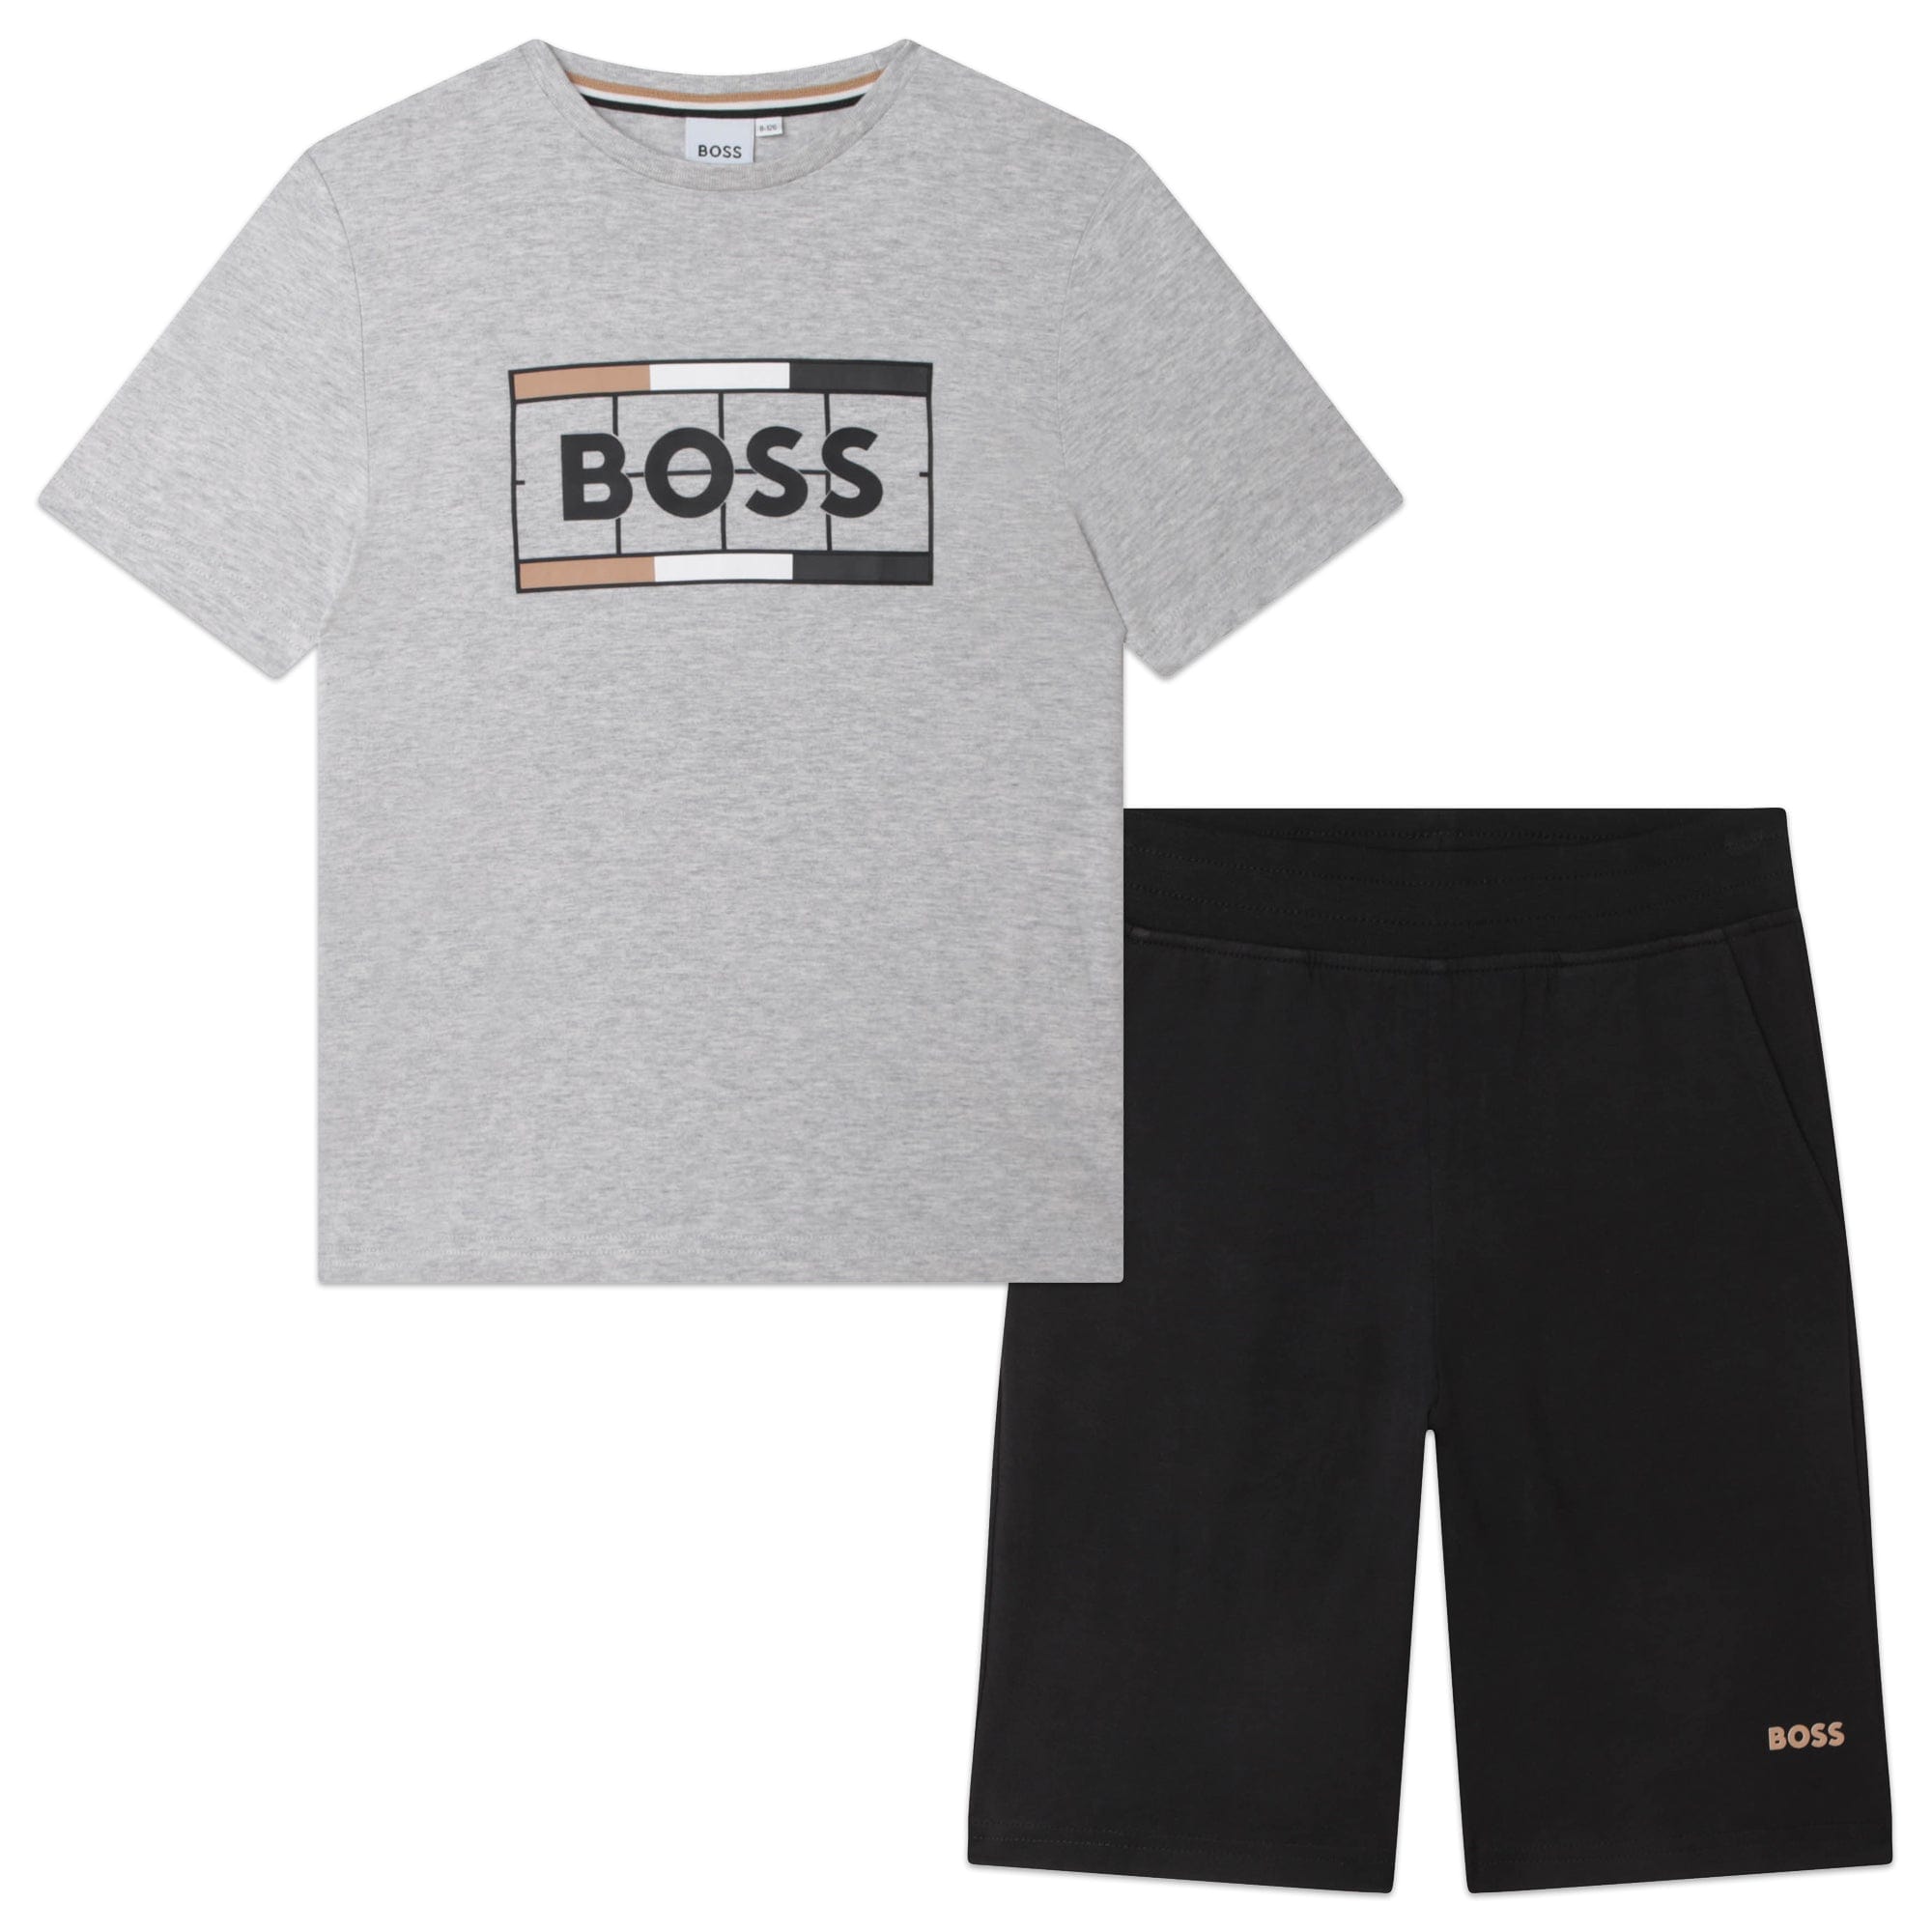 HUGO BOSS - Boss Short Set - Grey